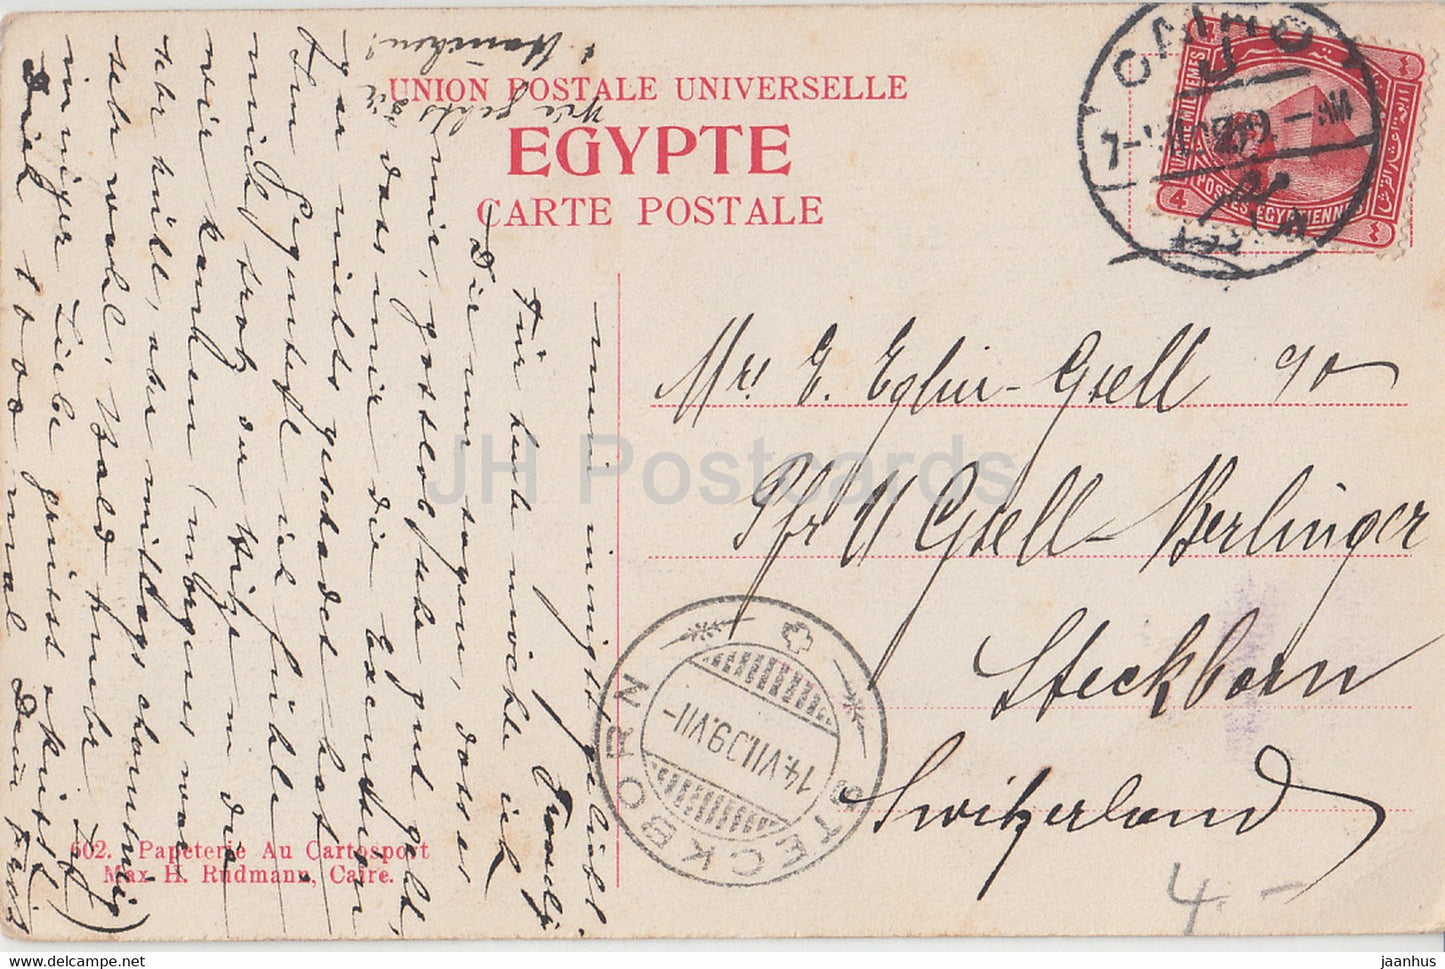 Le Caire - Le Caire - Mosquée el Azhar - Vue Générale des Minarets - carte postale ancienne - 1909 - Egypte - utilisé